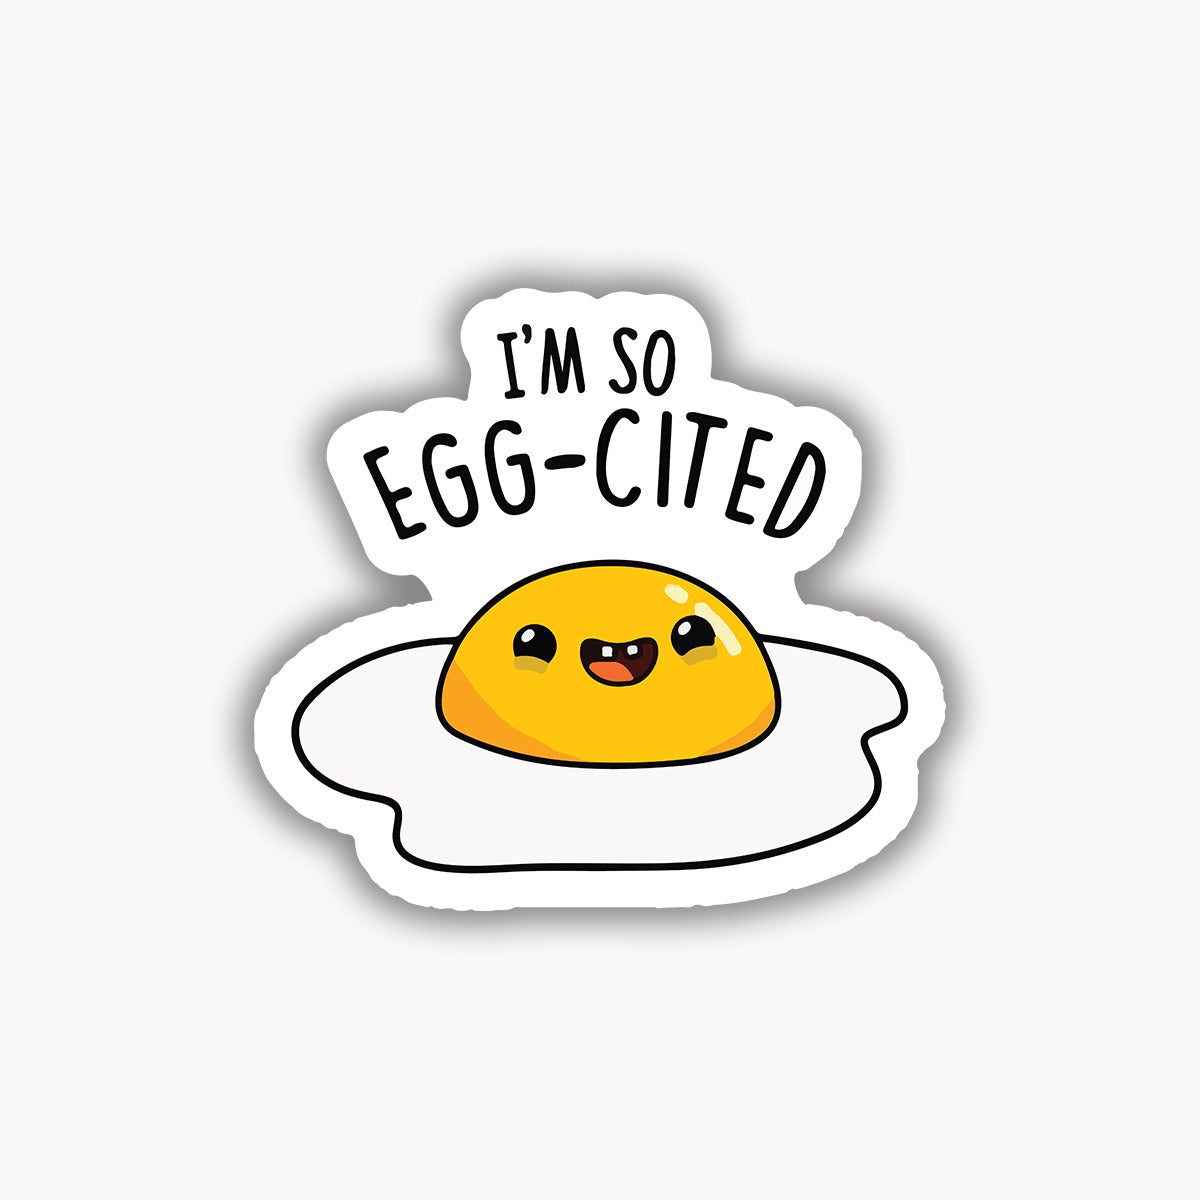 I'm so egg-cited